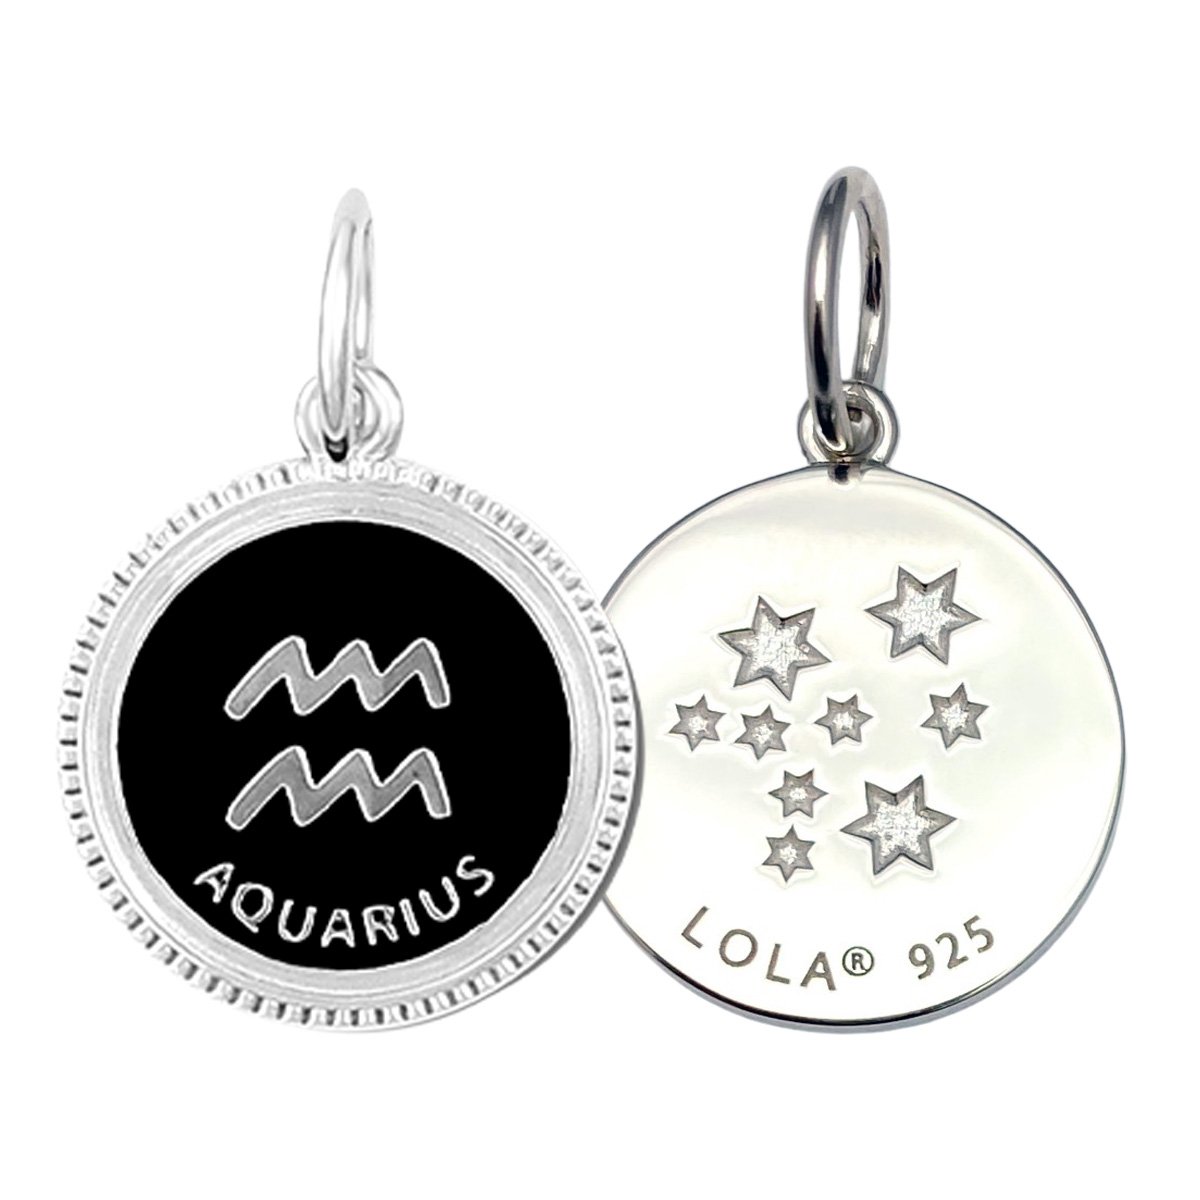 Aquarius Pendant Necklace - Women's Jewellery - Indie and Harper | Aquarius  pendant necklace, Aquarius pendant, Beautiful pendant necklace